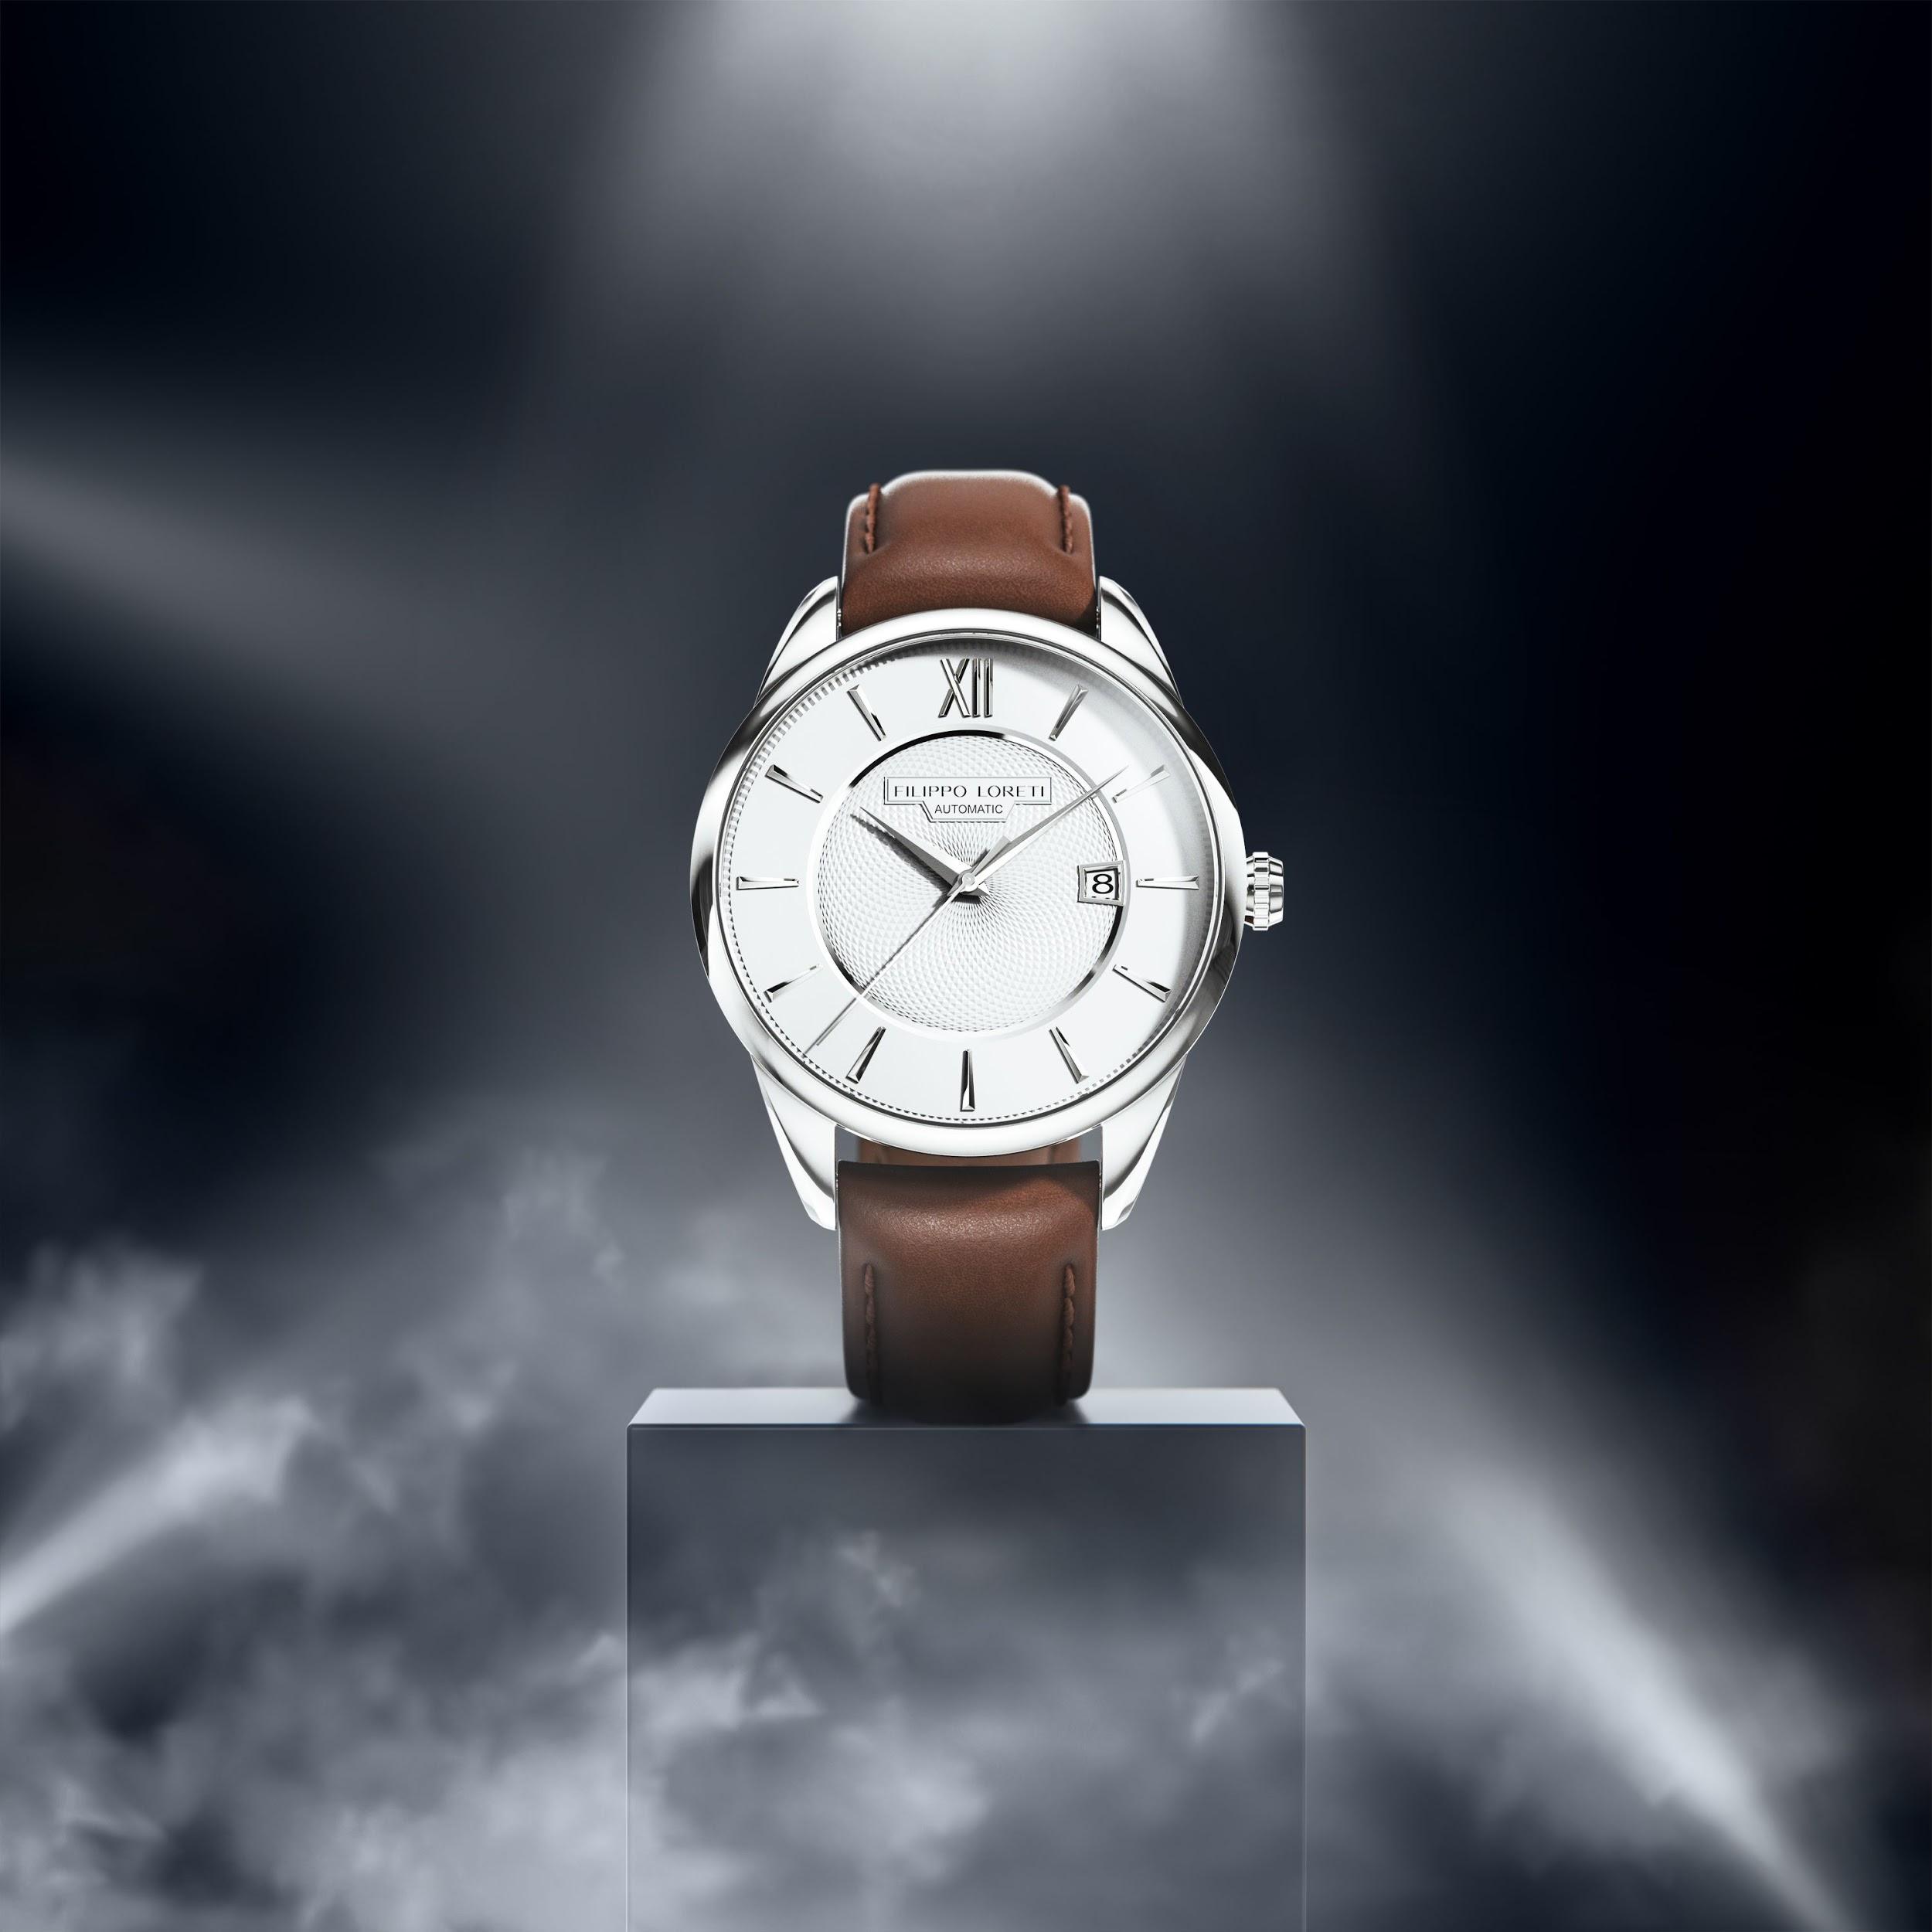 Rome Silver Automatic Watch from Filippo Loreti